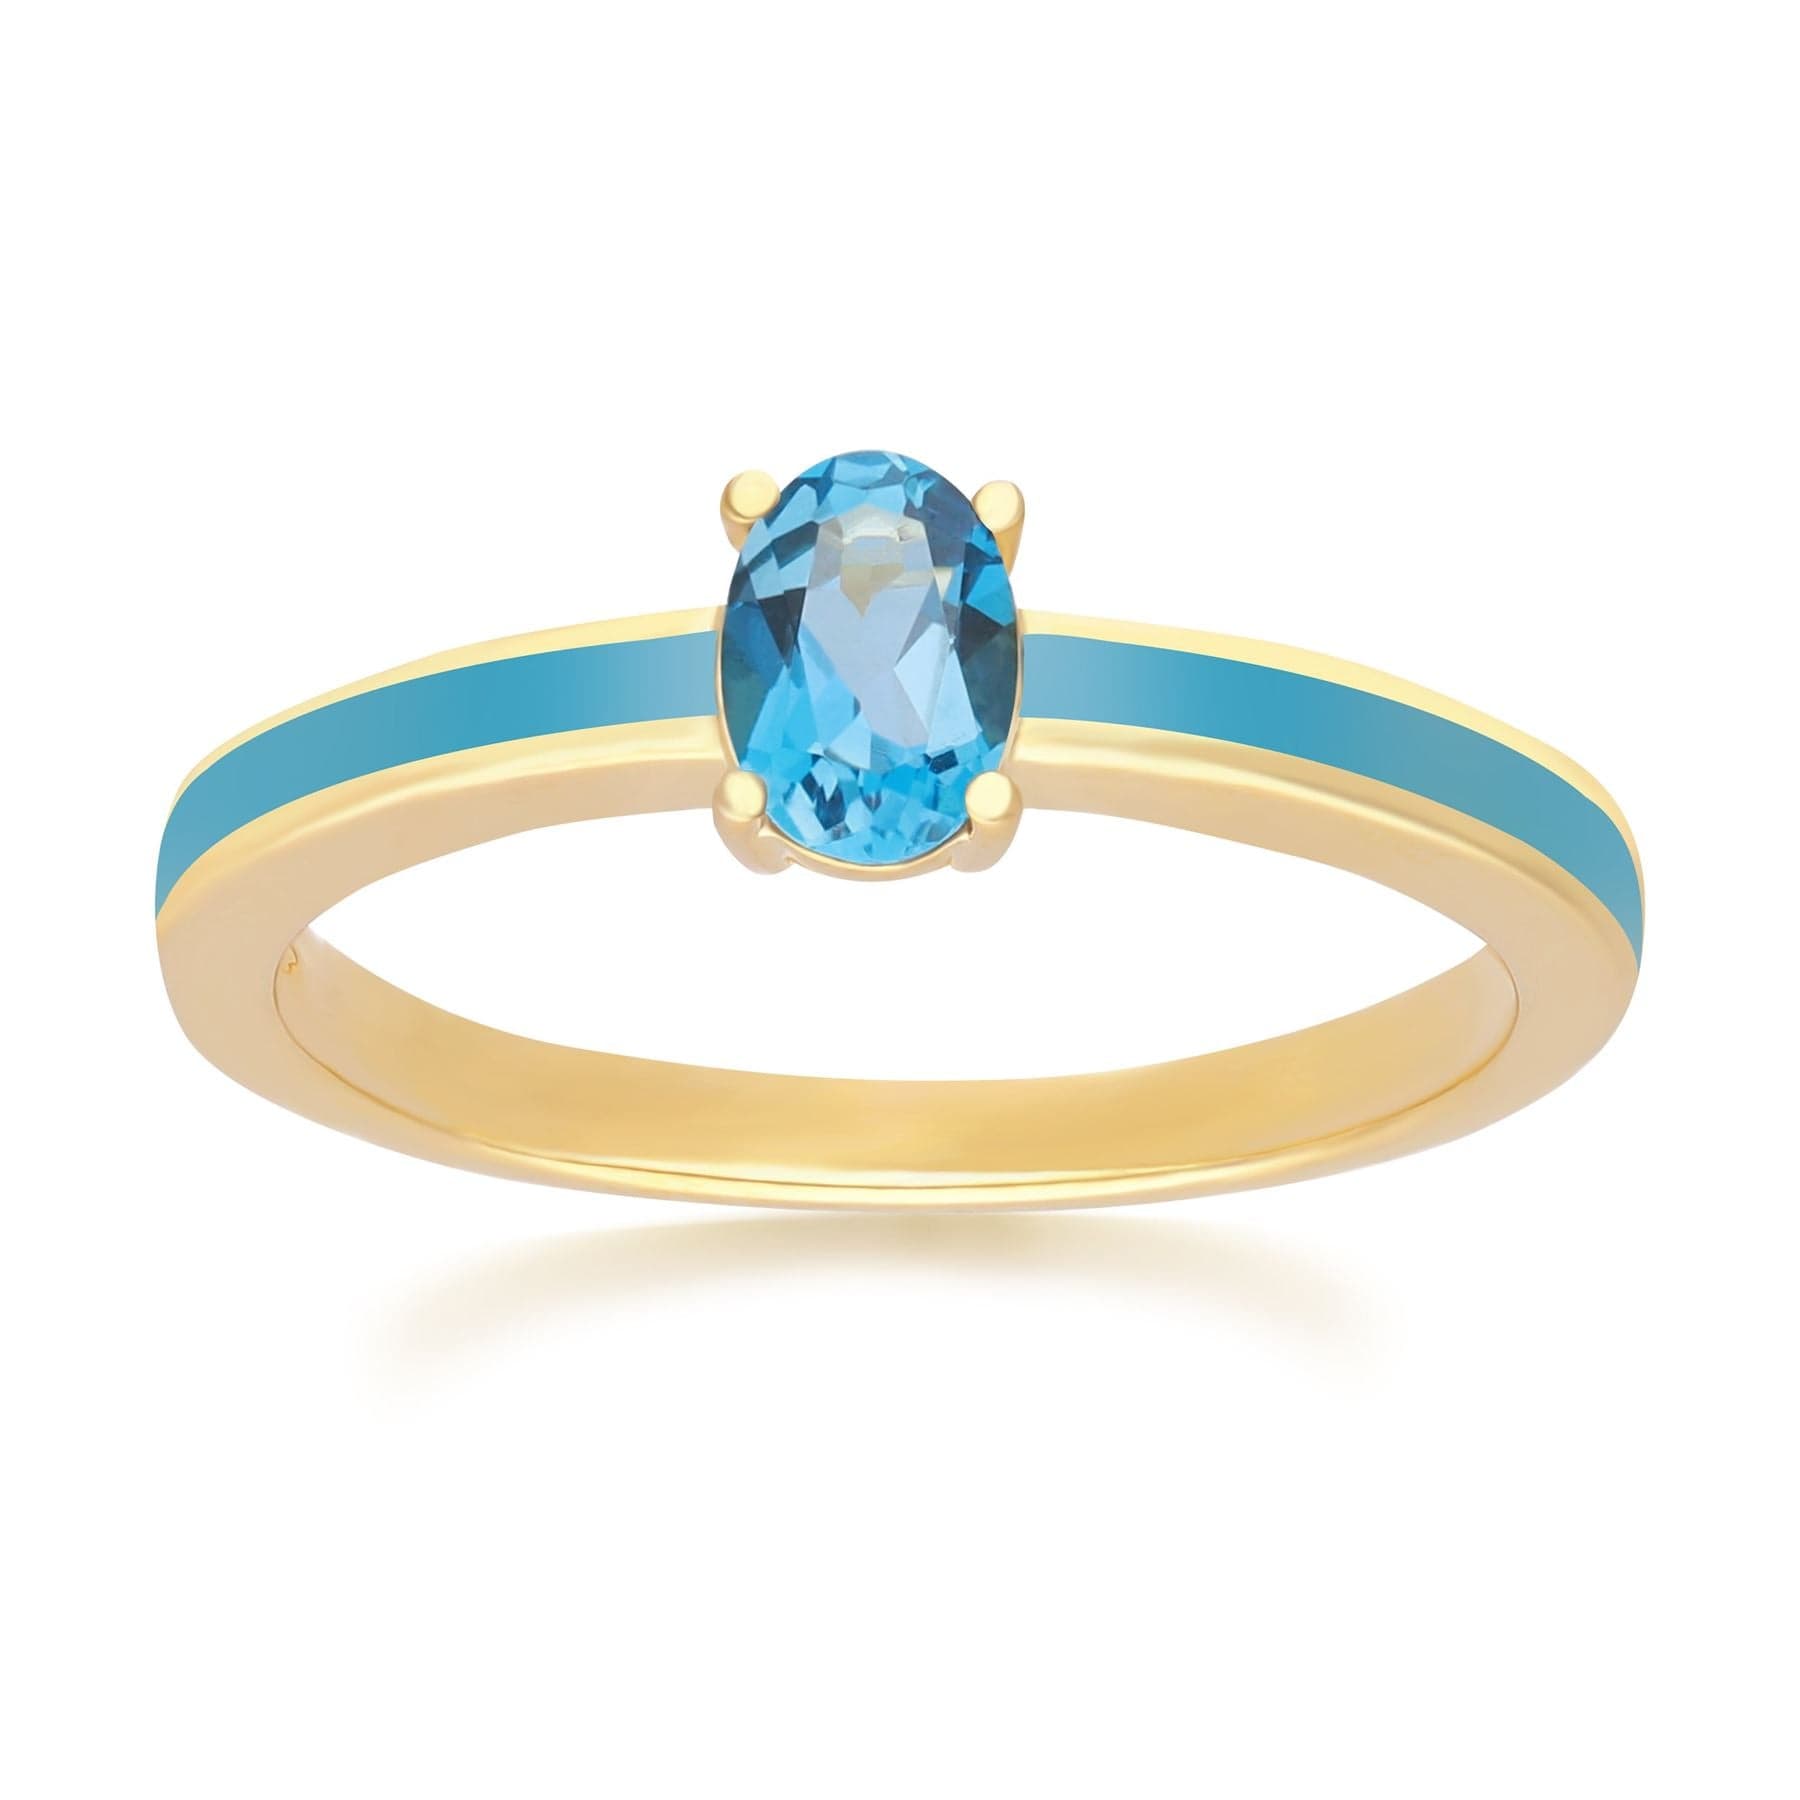 Siberian Waltz Blue Enamel & London Blue Topaz Ring in Gold Plated Silver - Gemondo